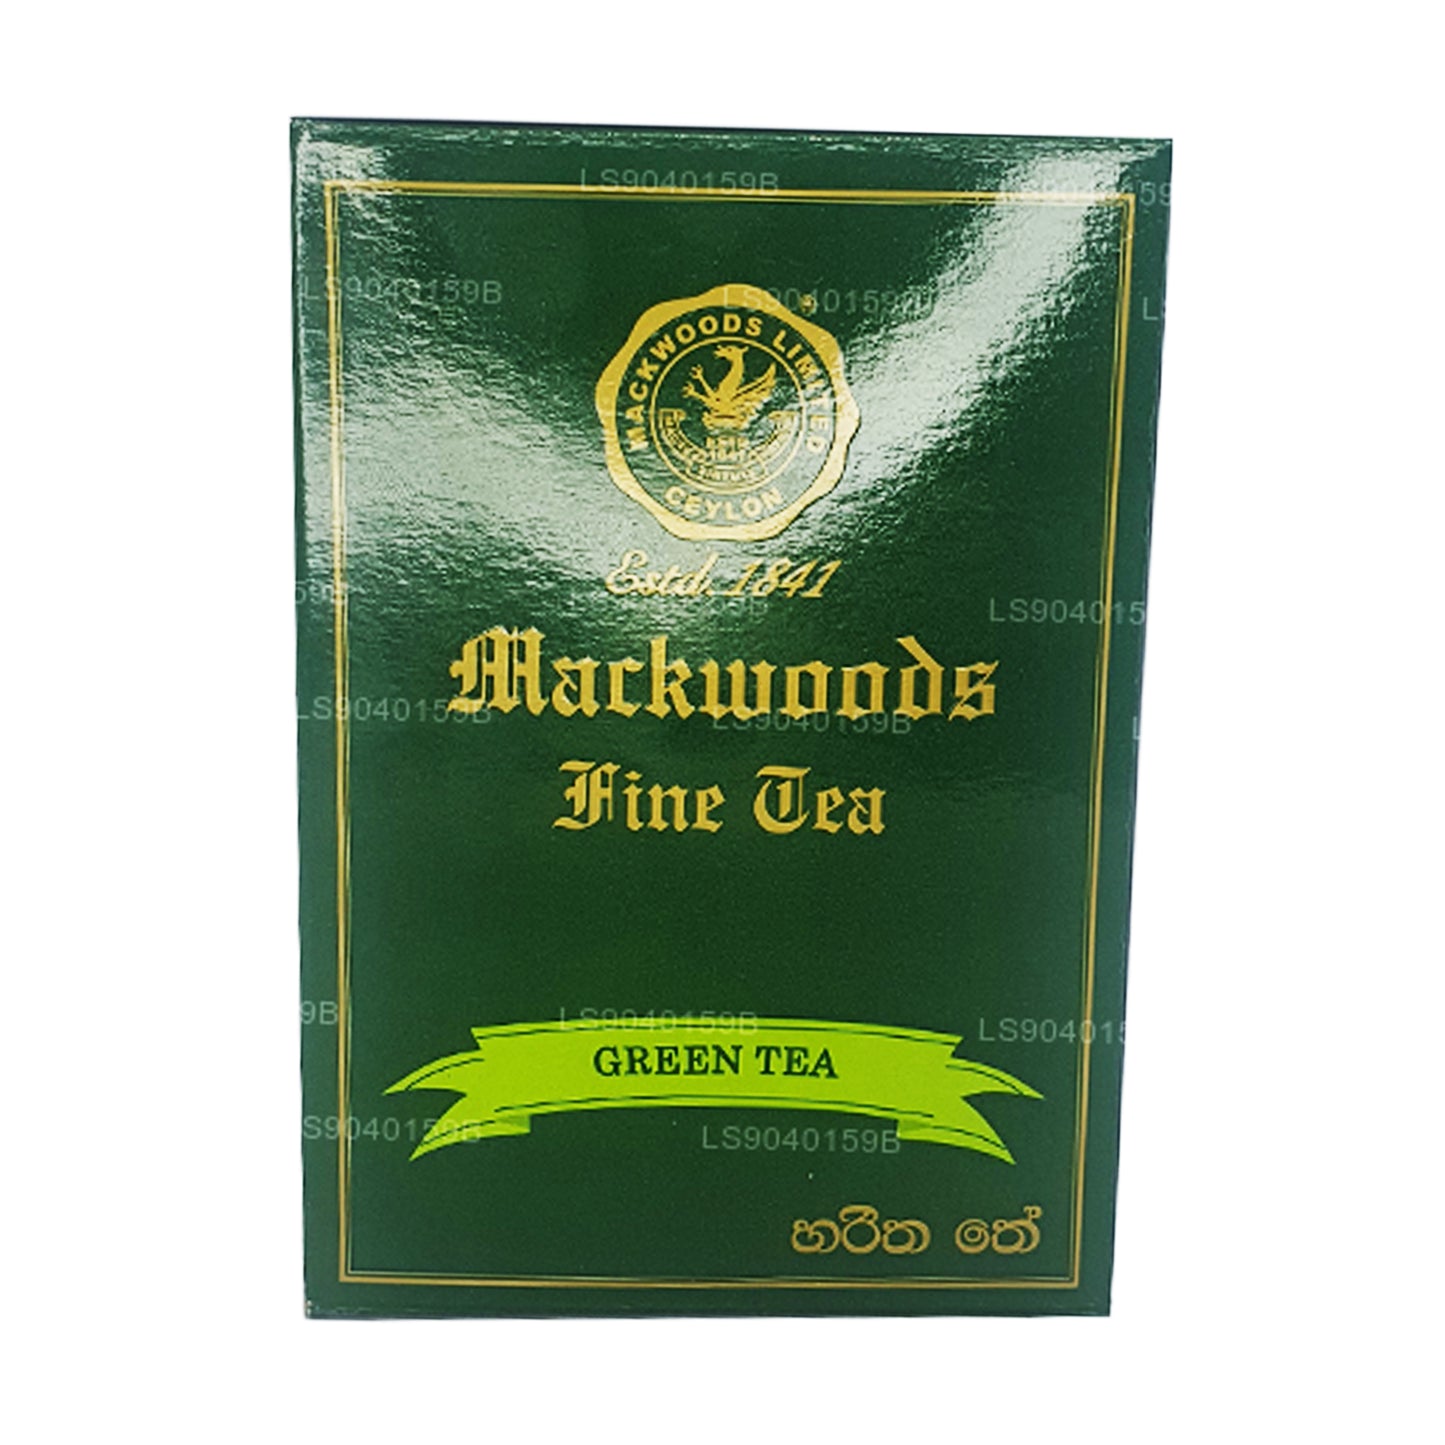 Mackwoods groene thee met losse bladeren (100 g)